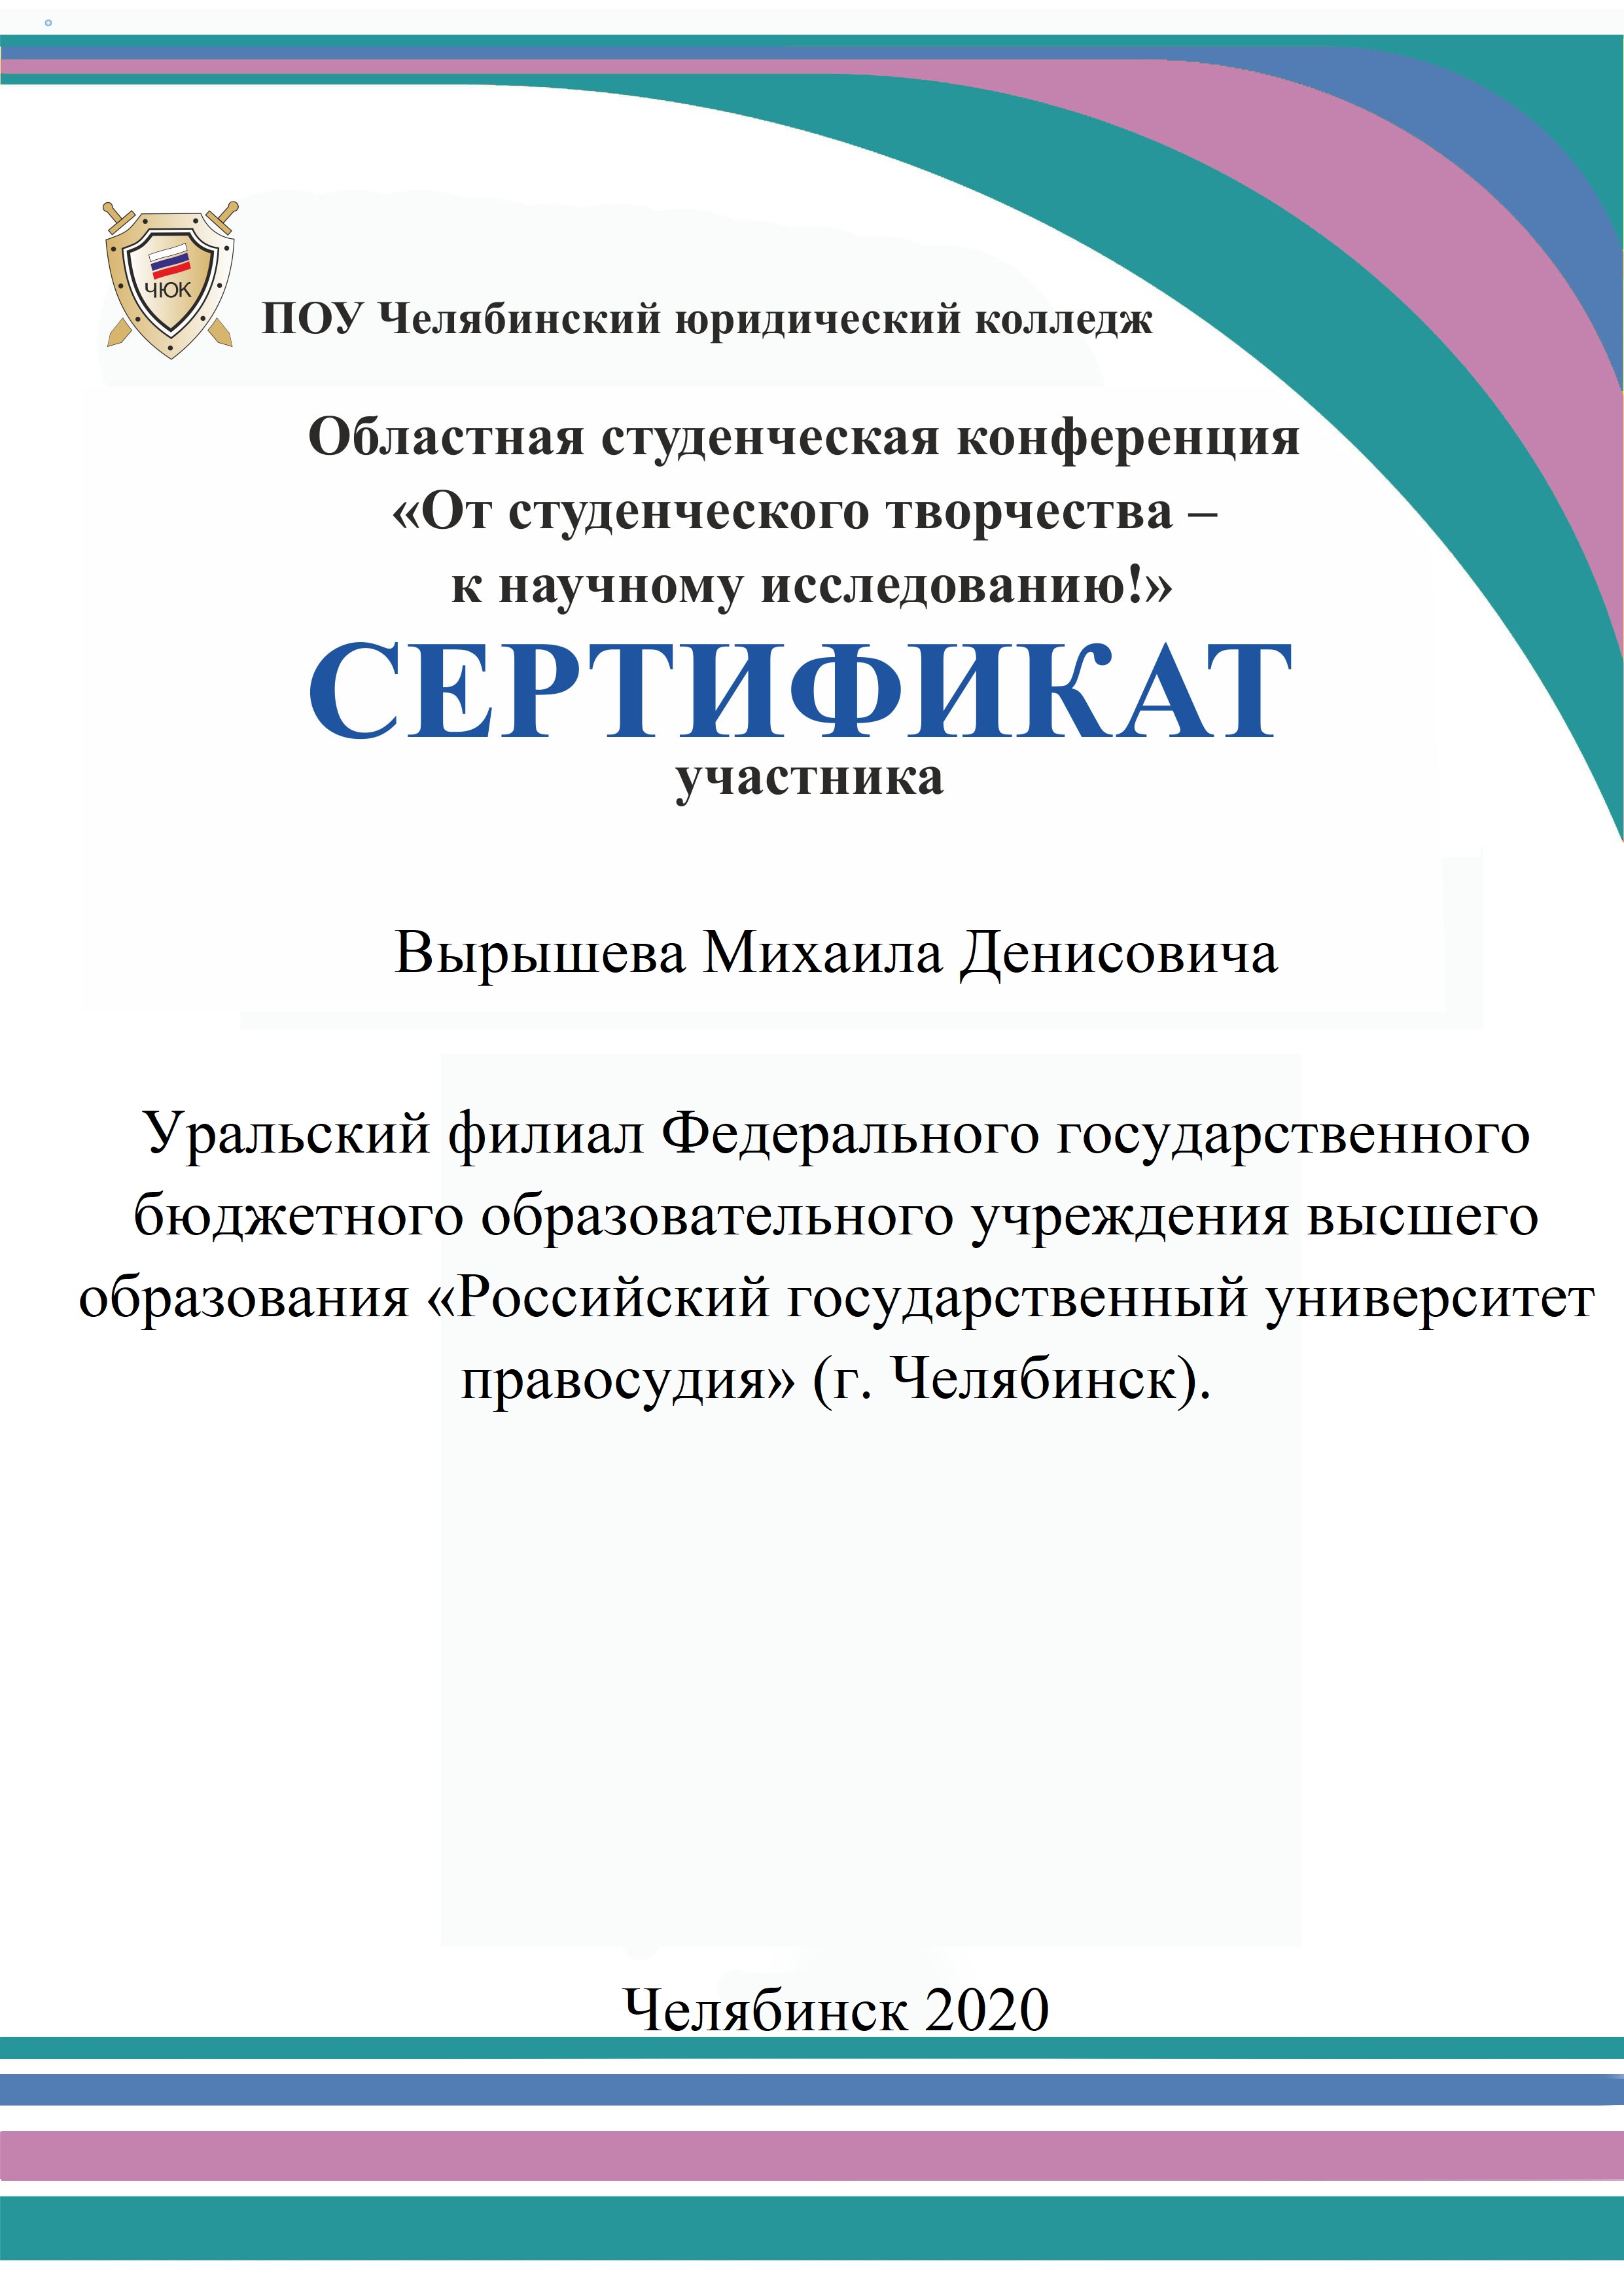 Курсовая работа по теме Апелляционный суд в судебной системе Украины 